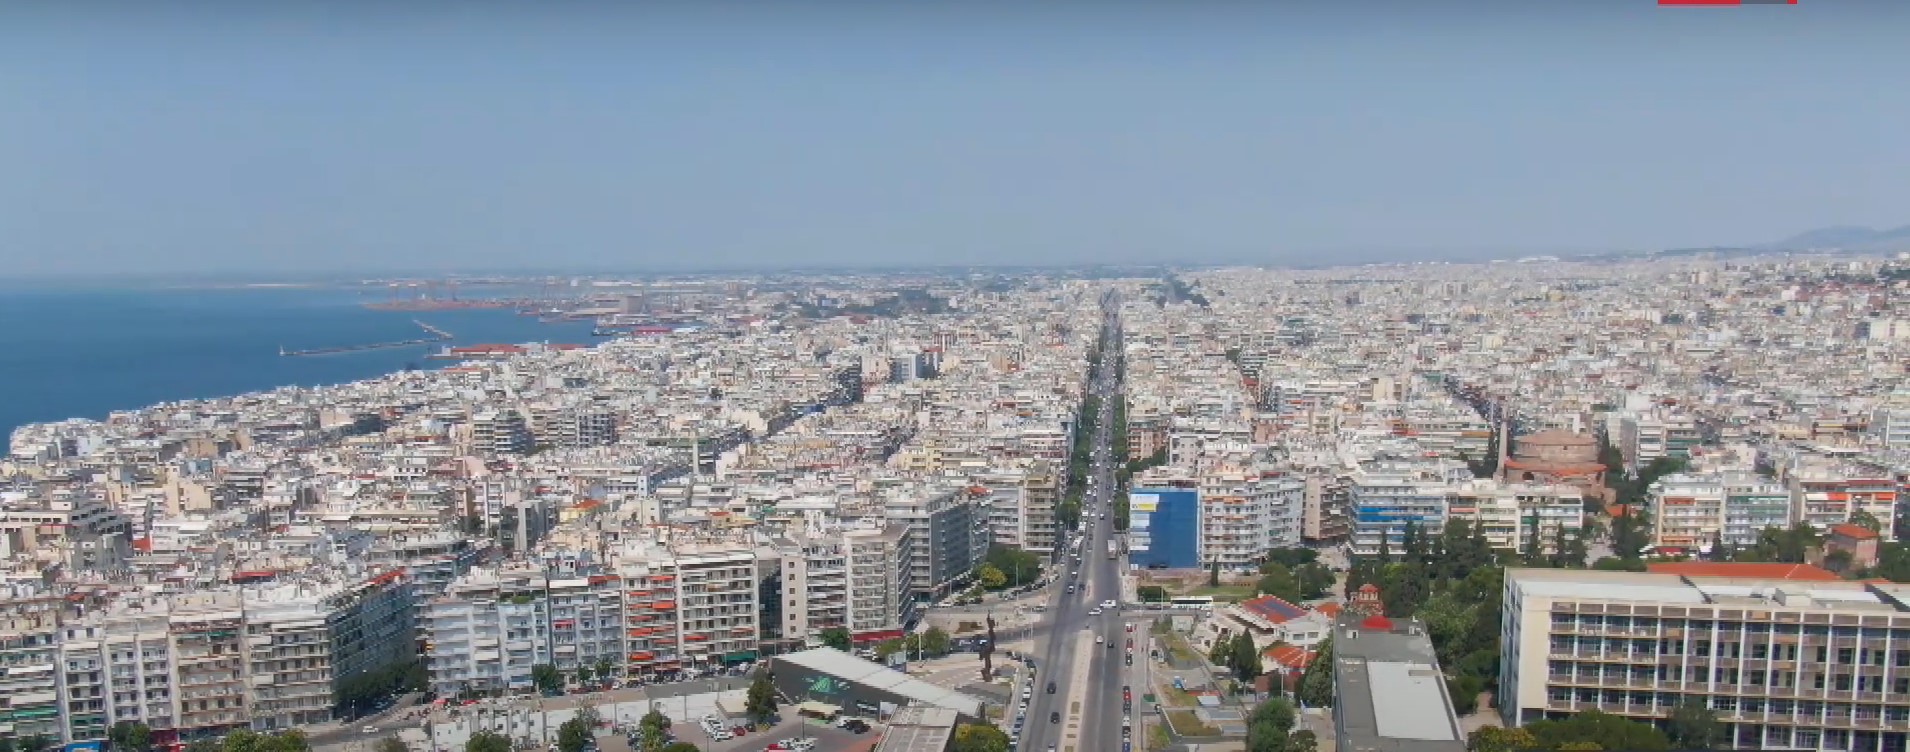 Θεσσαλονίκη: Η πόλη αποκτά νέο Γενικό Πολεοδομικό Σχέδιο